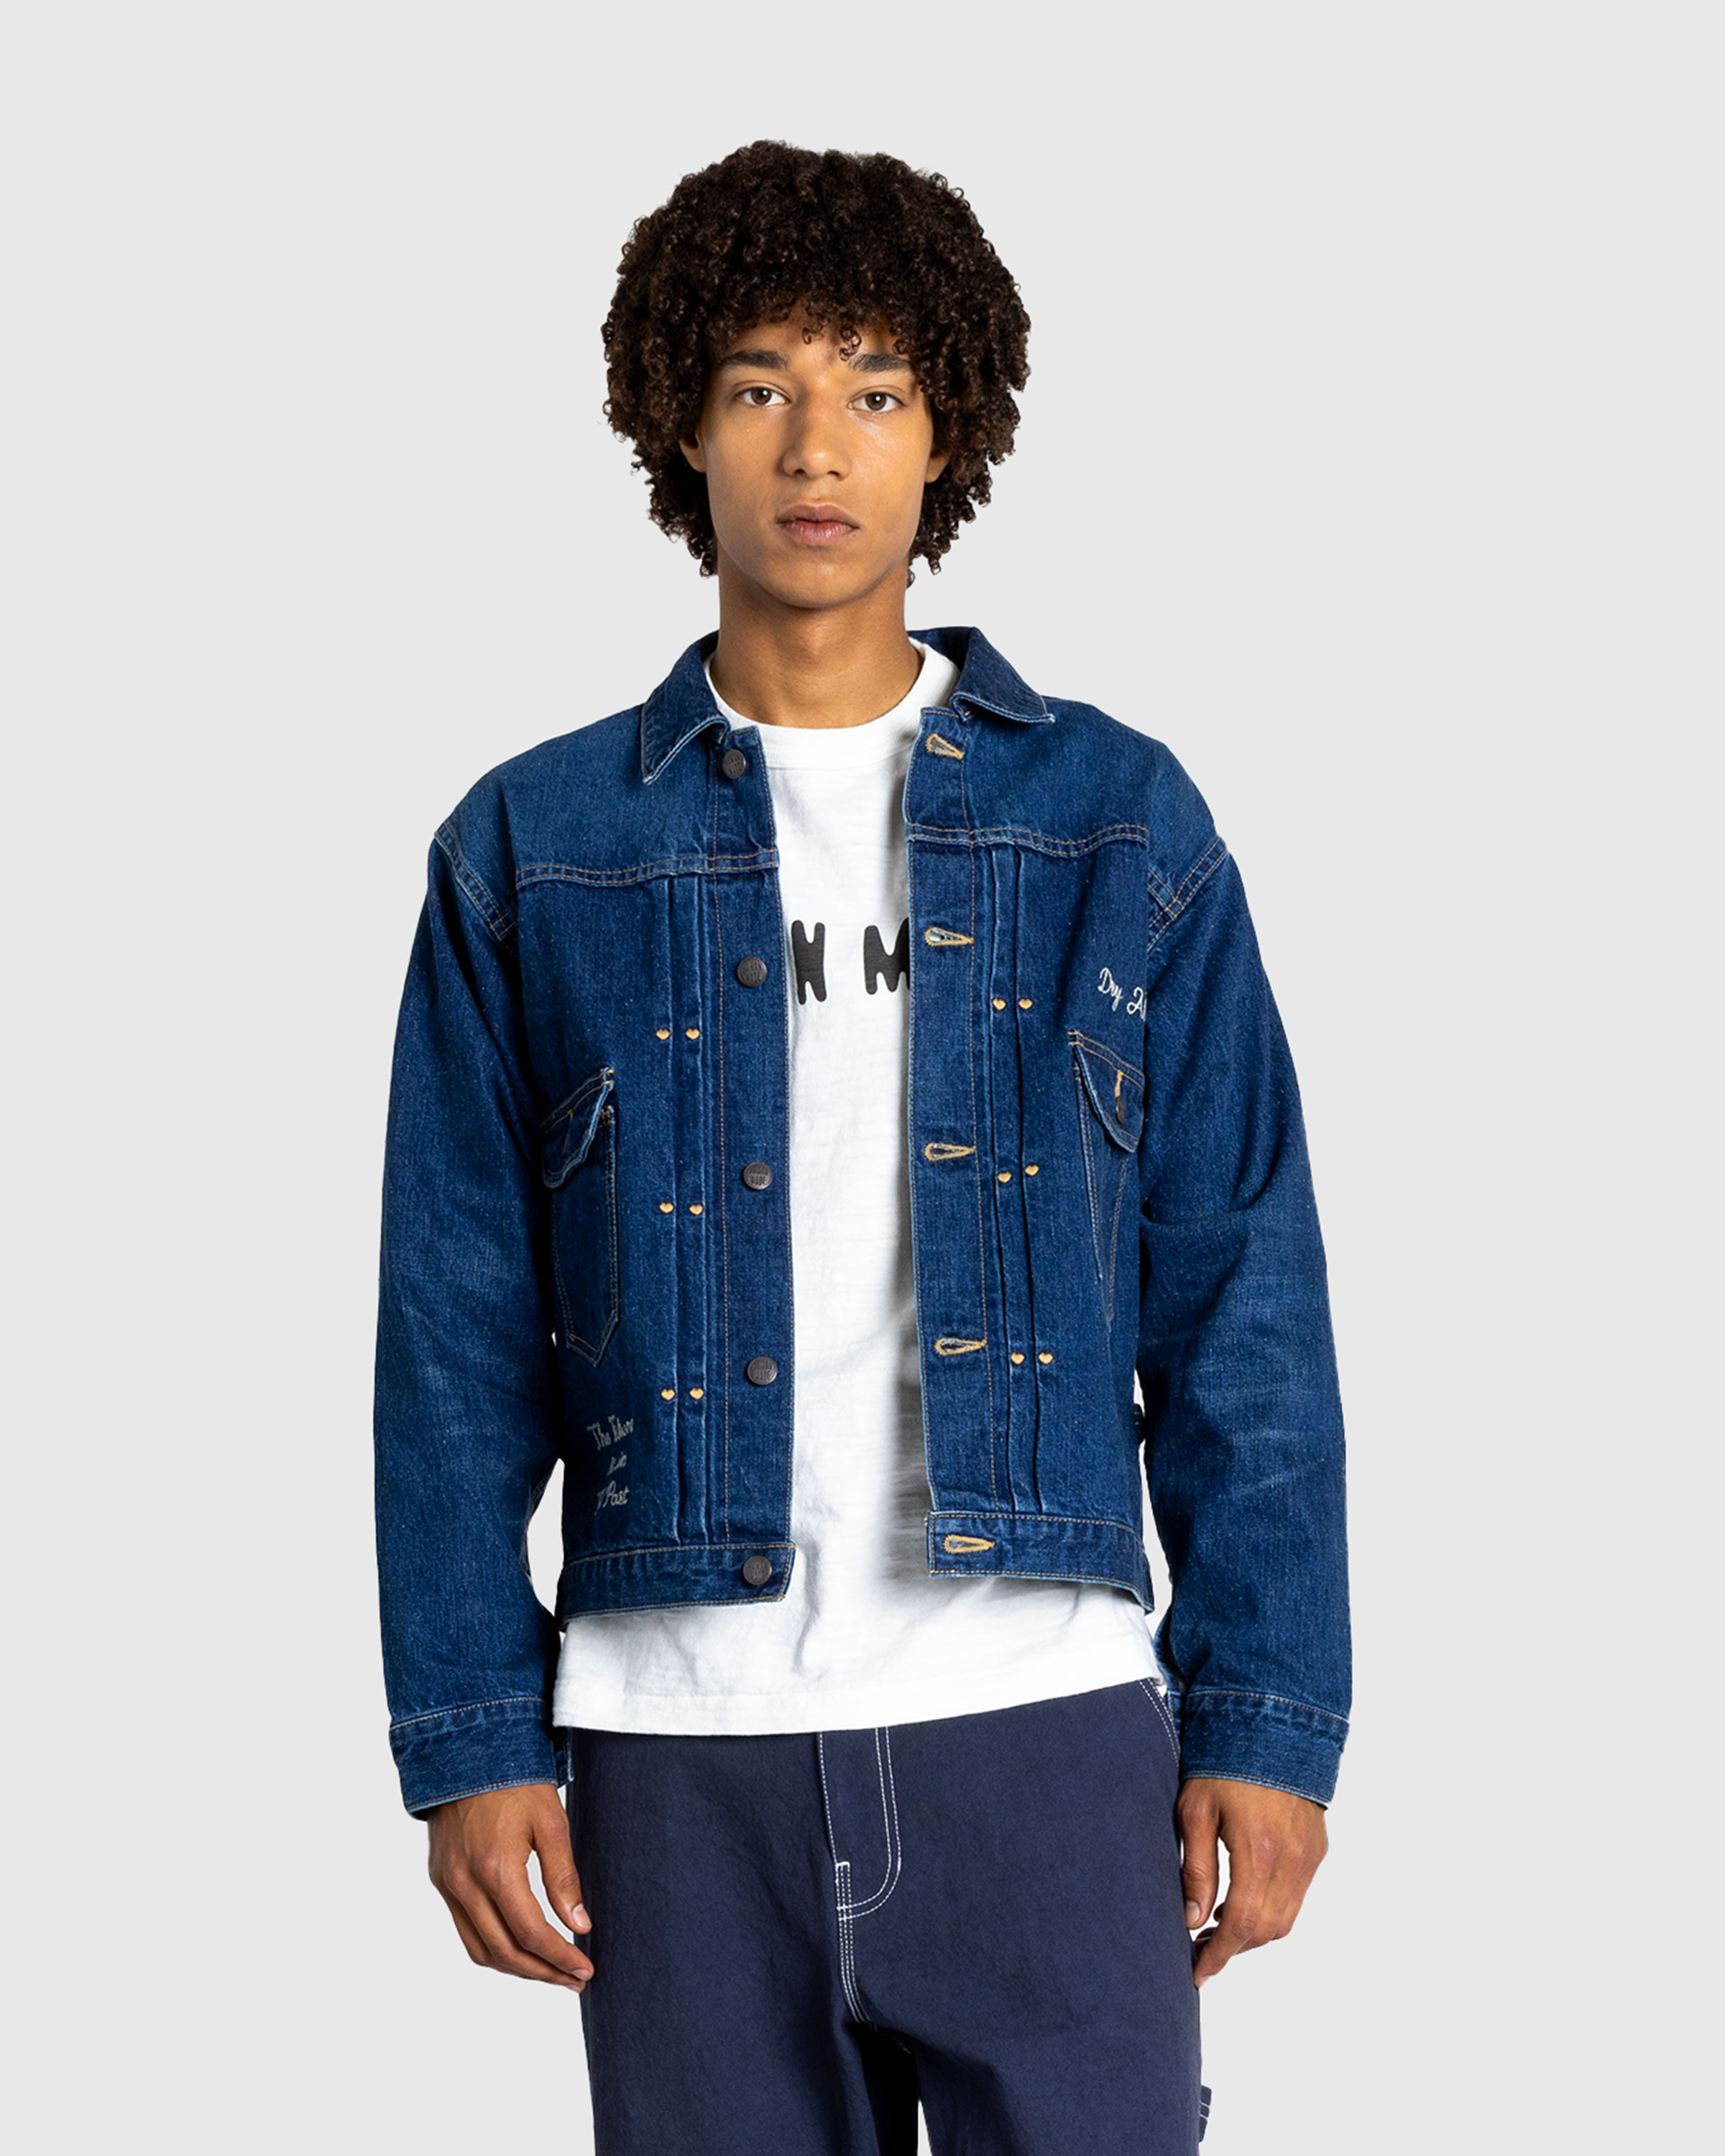 Human Made – Denim Work Jacket Indigo - Jackets - Blue - Image 2